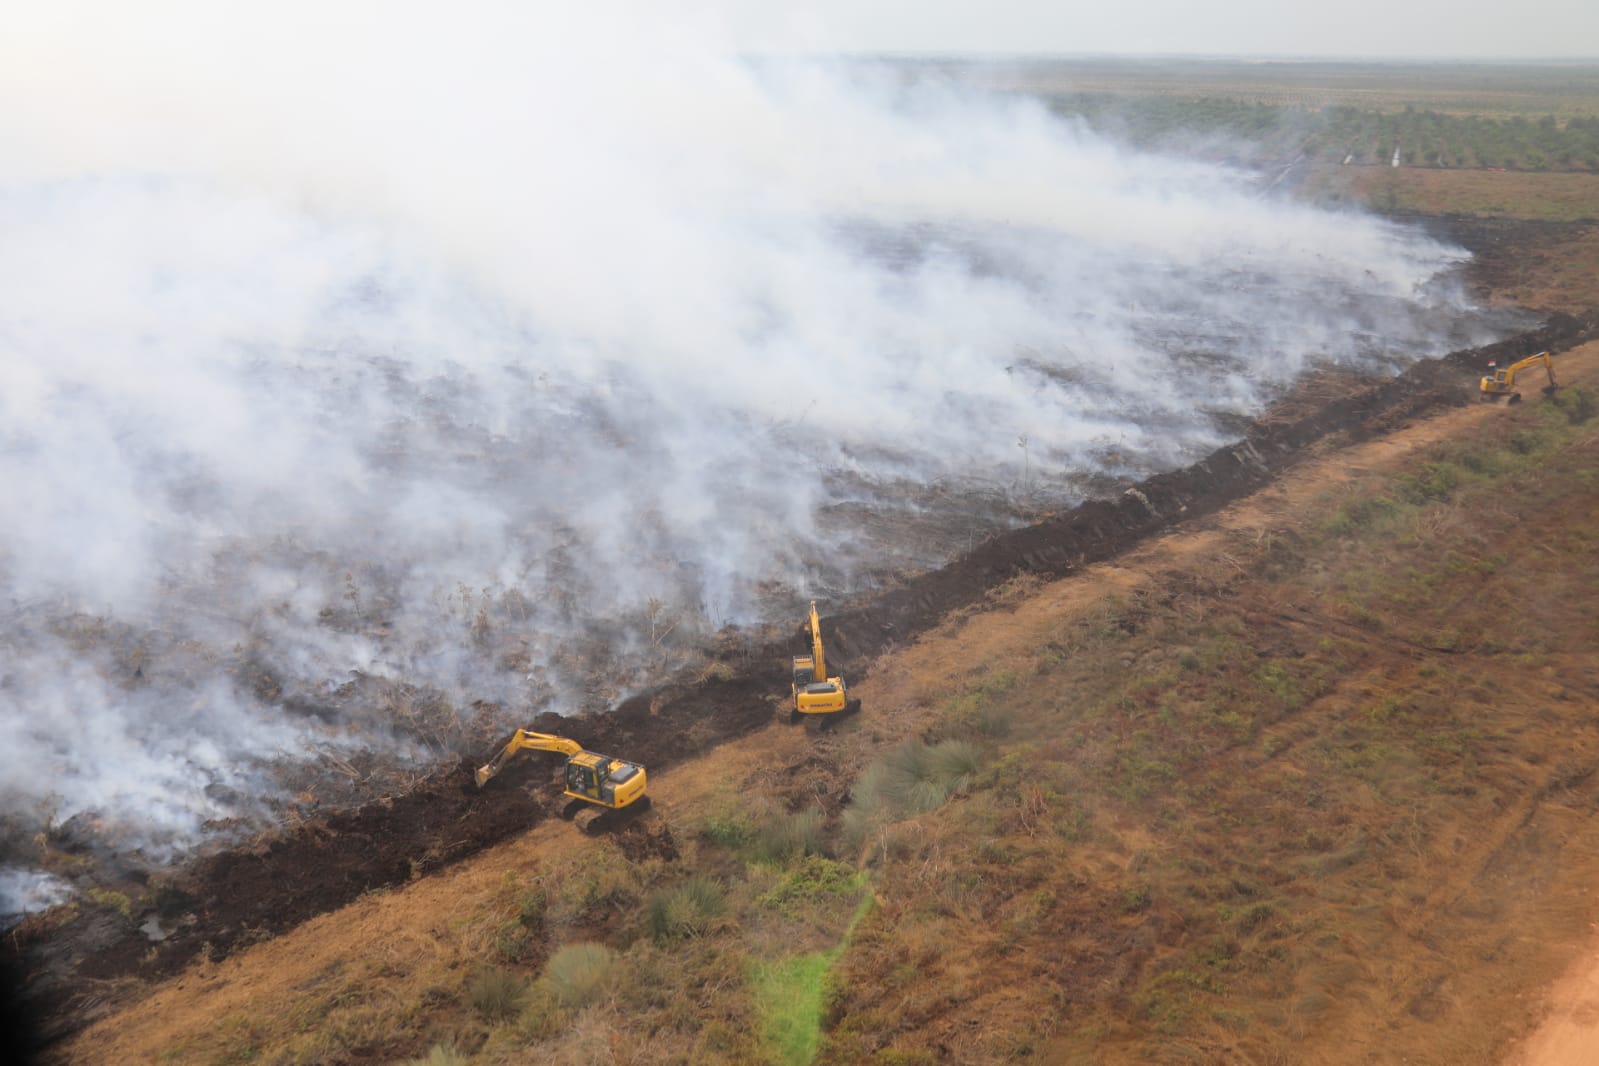 Upaya tim operasi darat menggunakan alat berat untuk menahan laju kebakaran agar tidak menyebar ke lahan lainnya di wilayah provinsi Sumatera Selatan pada Selasa (12/9).